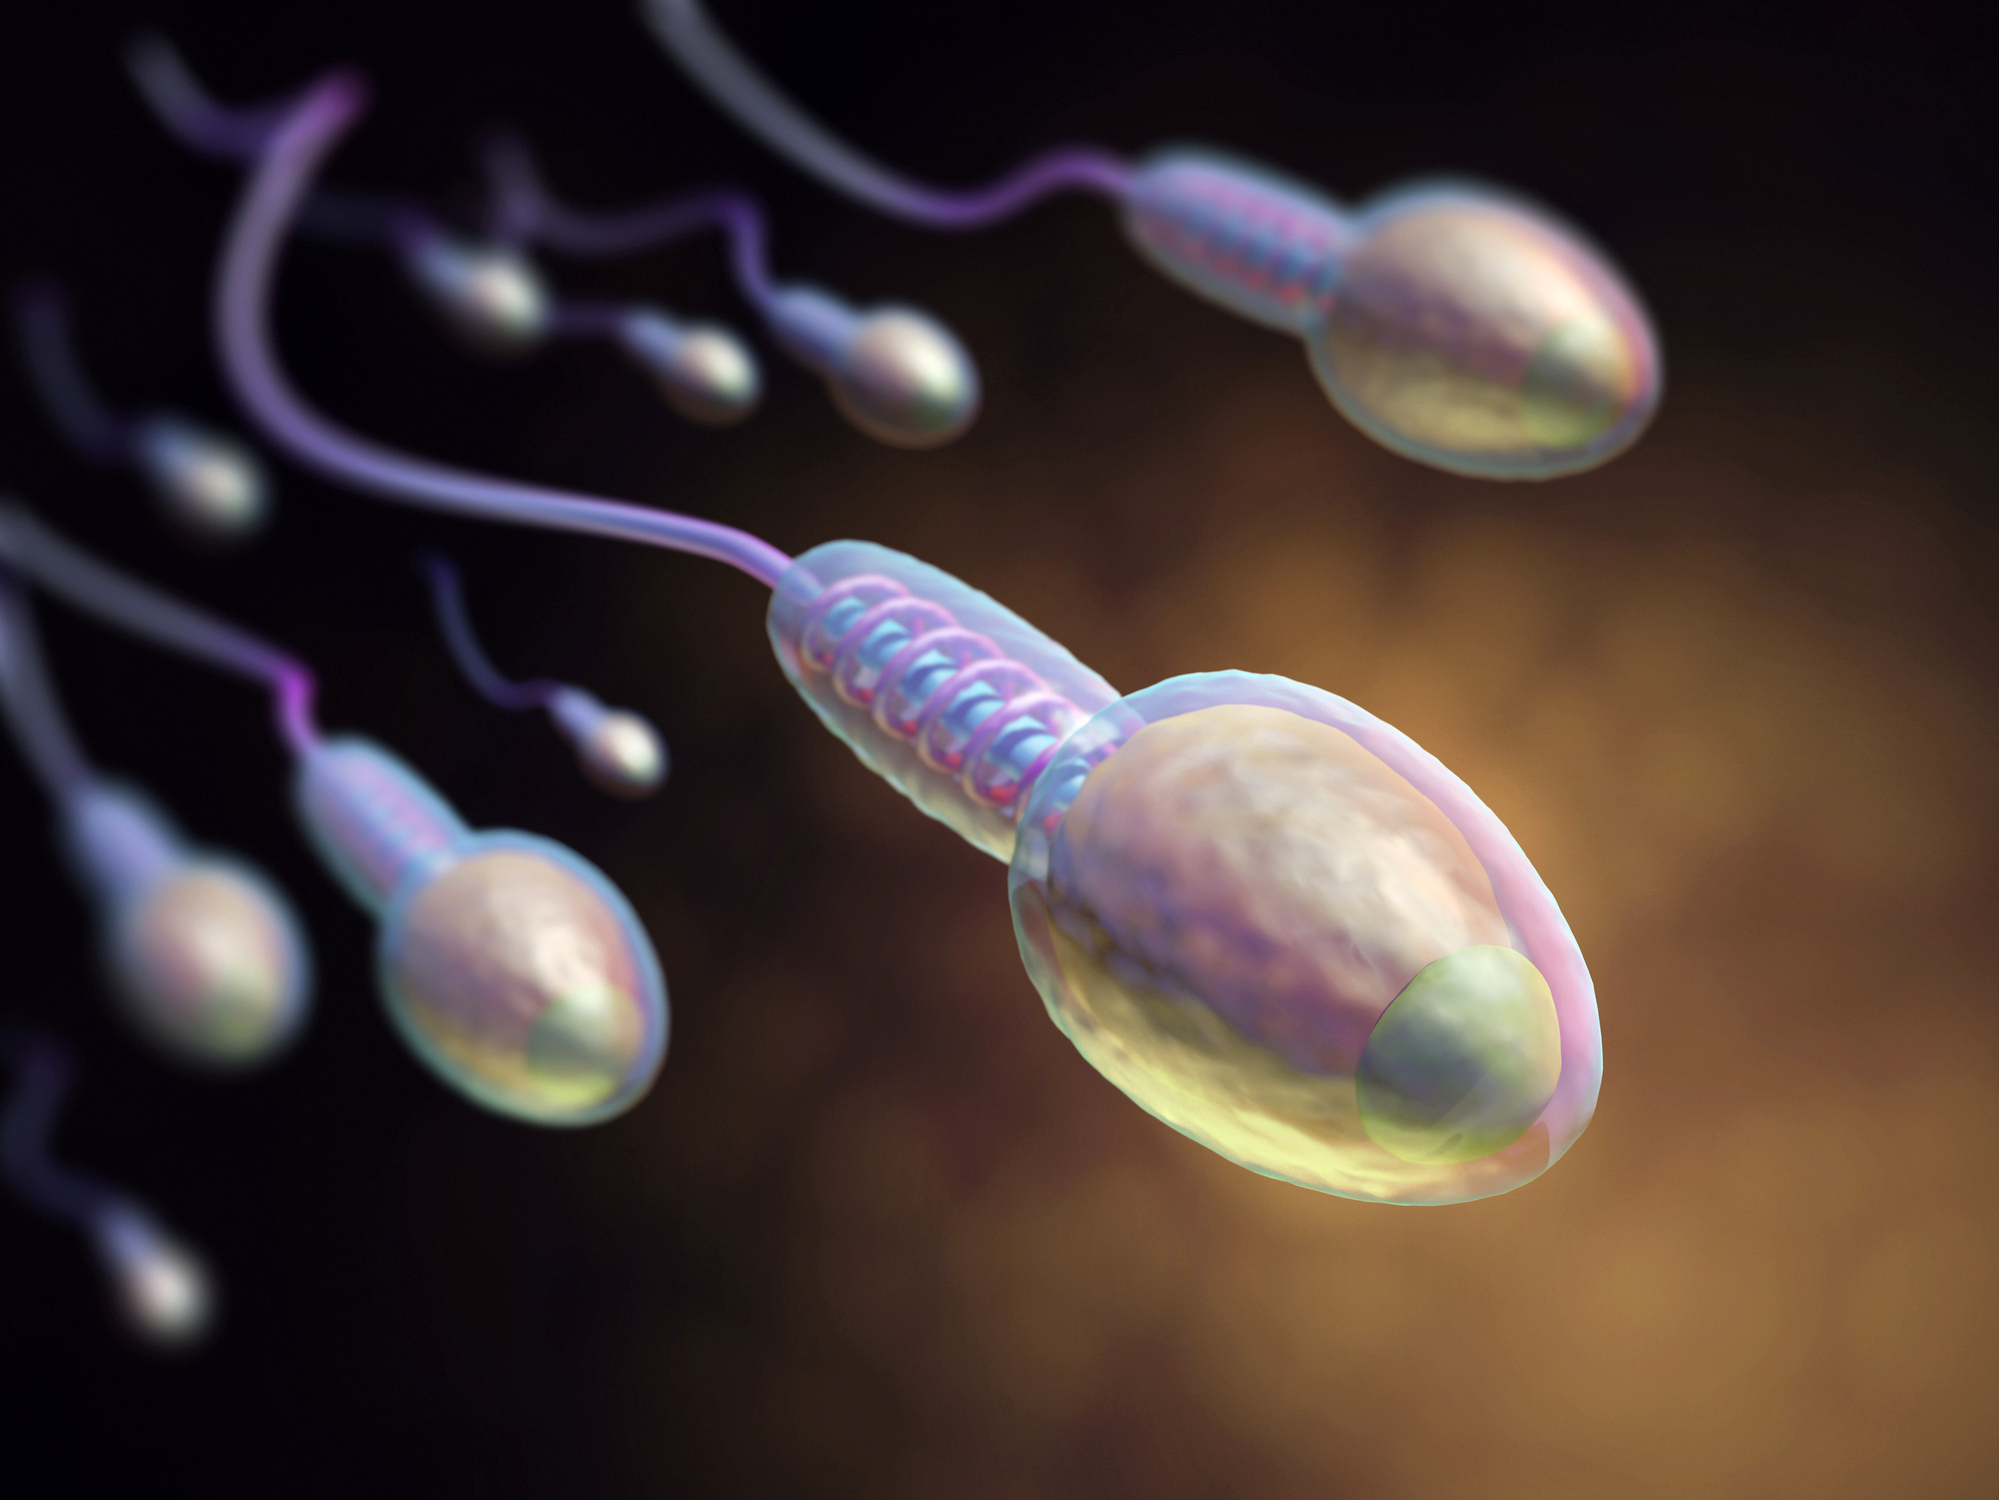 мужская сперма полезная для женского здоровья фото 100